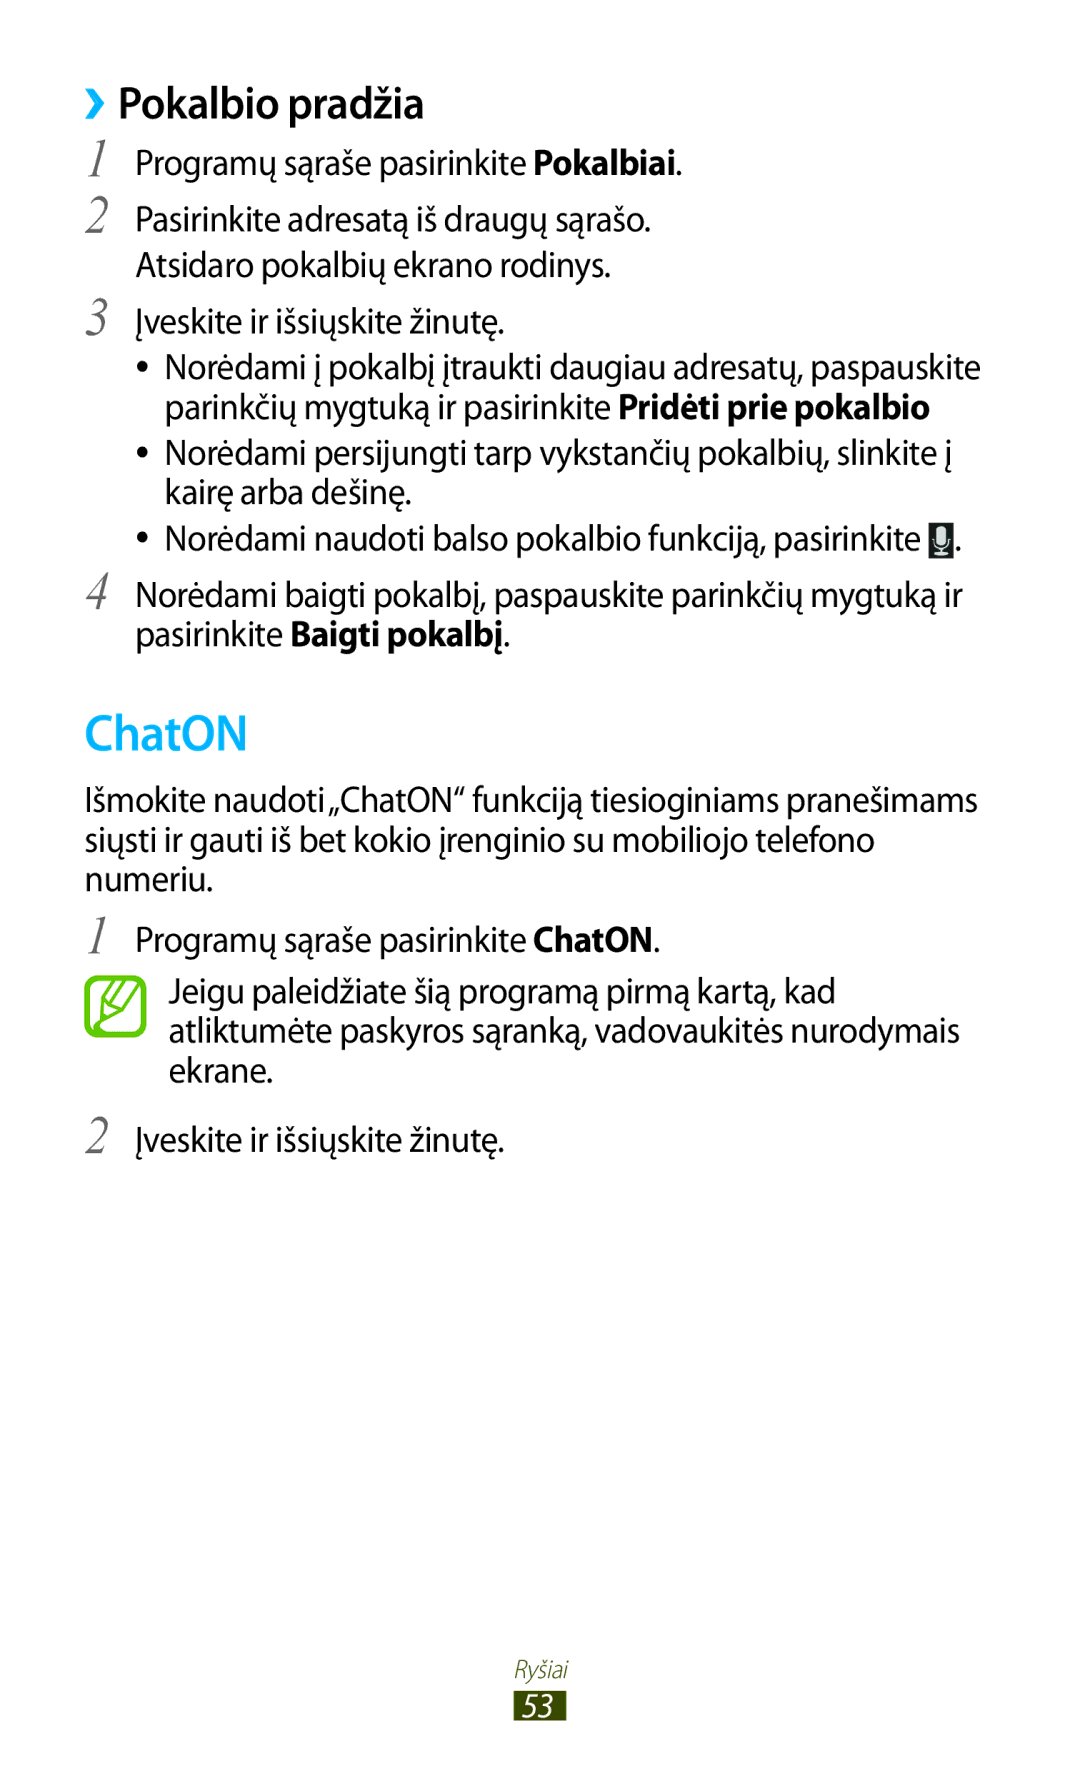 Samsung GT-S5301ZKASEB ChatON, ››Pokalbio pradžia, Programų sąraše pasirinkite Pokalbiai, Įveskite ir išsiųskite žinutę 